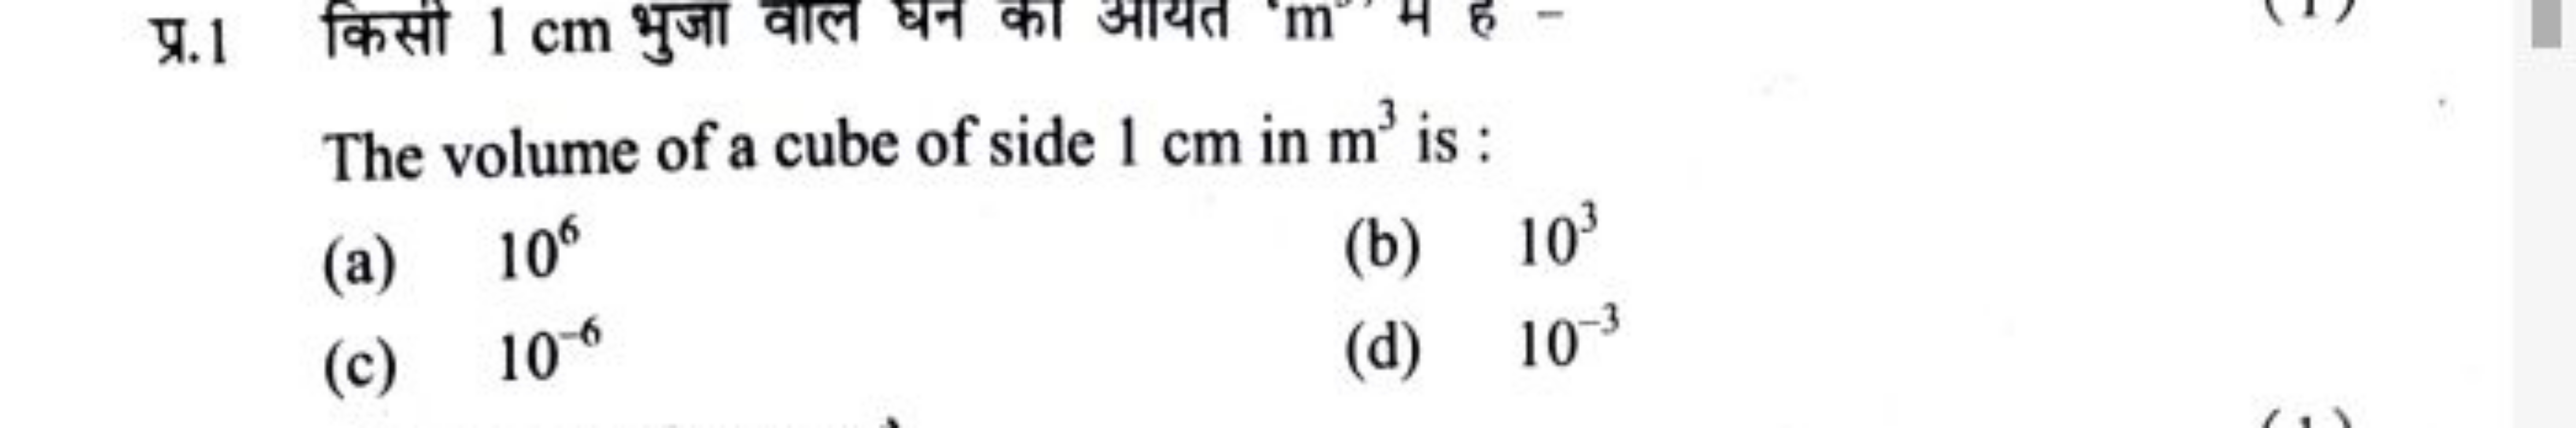 प्र.1 किसी 1 cm भुजा वाल घन का आयत m मे है-
The volume of a cube of si